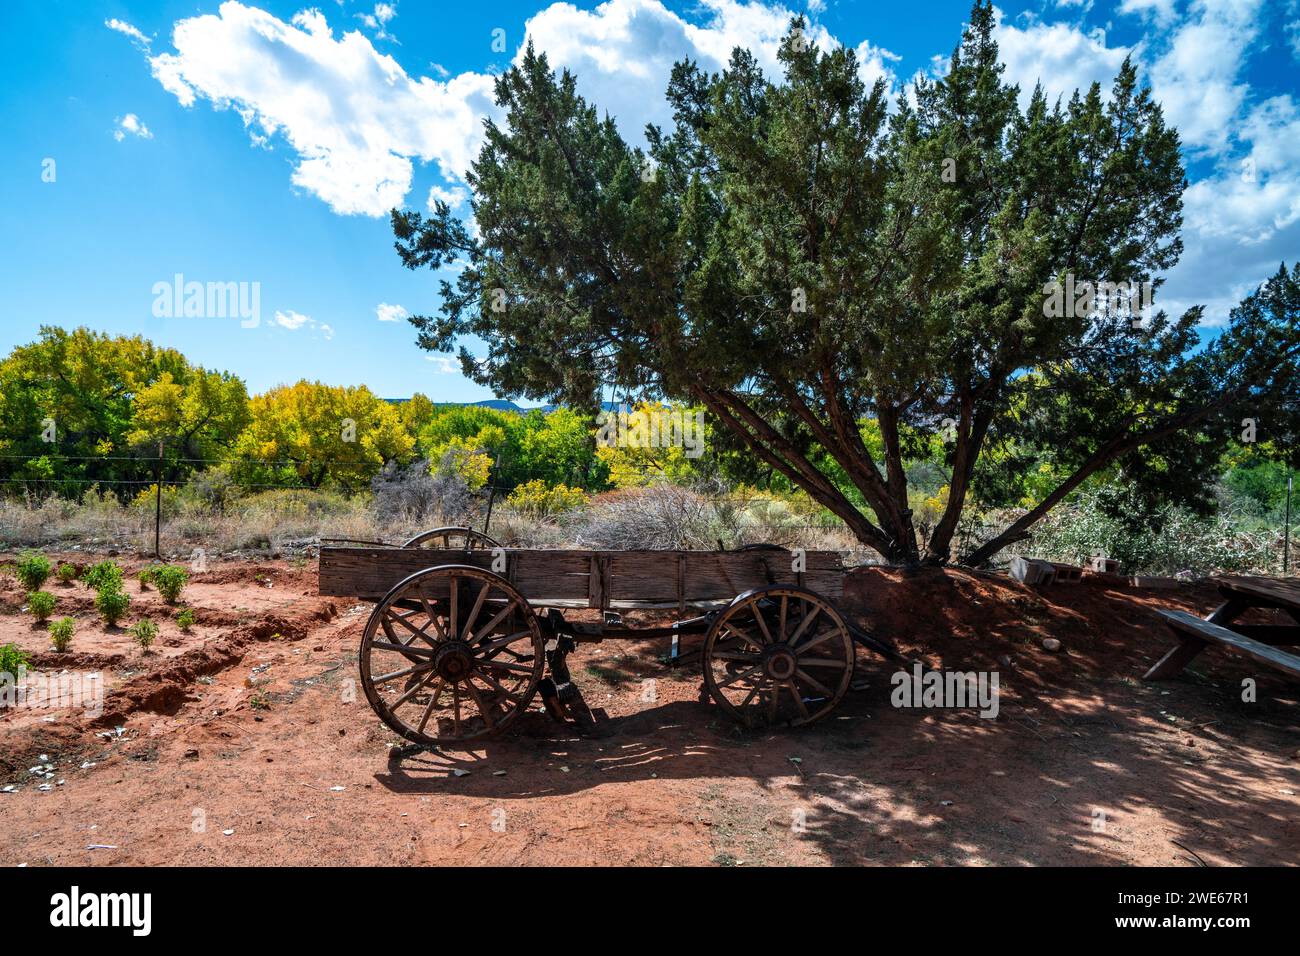 Ein alter Bauernwagen ist eine der vielen Ausstellungen im Jemez Pueblo's Walatowa Visitor Center, 40 Meilen nordwestlich von Albuquerque, New Mexico. Stockfoto